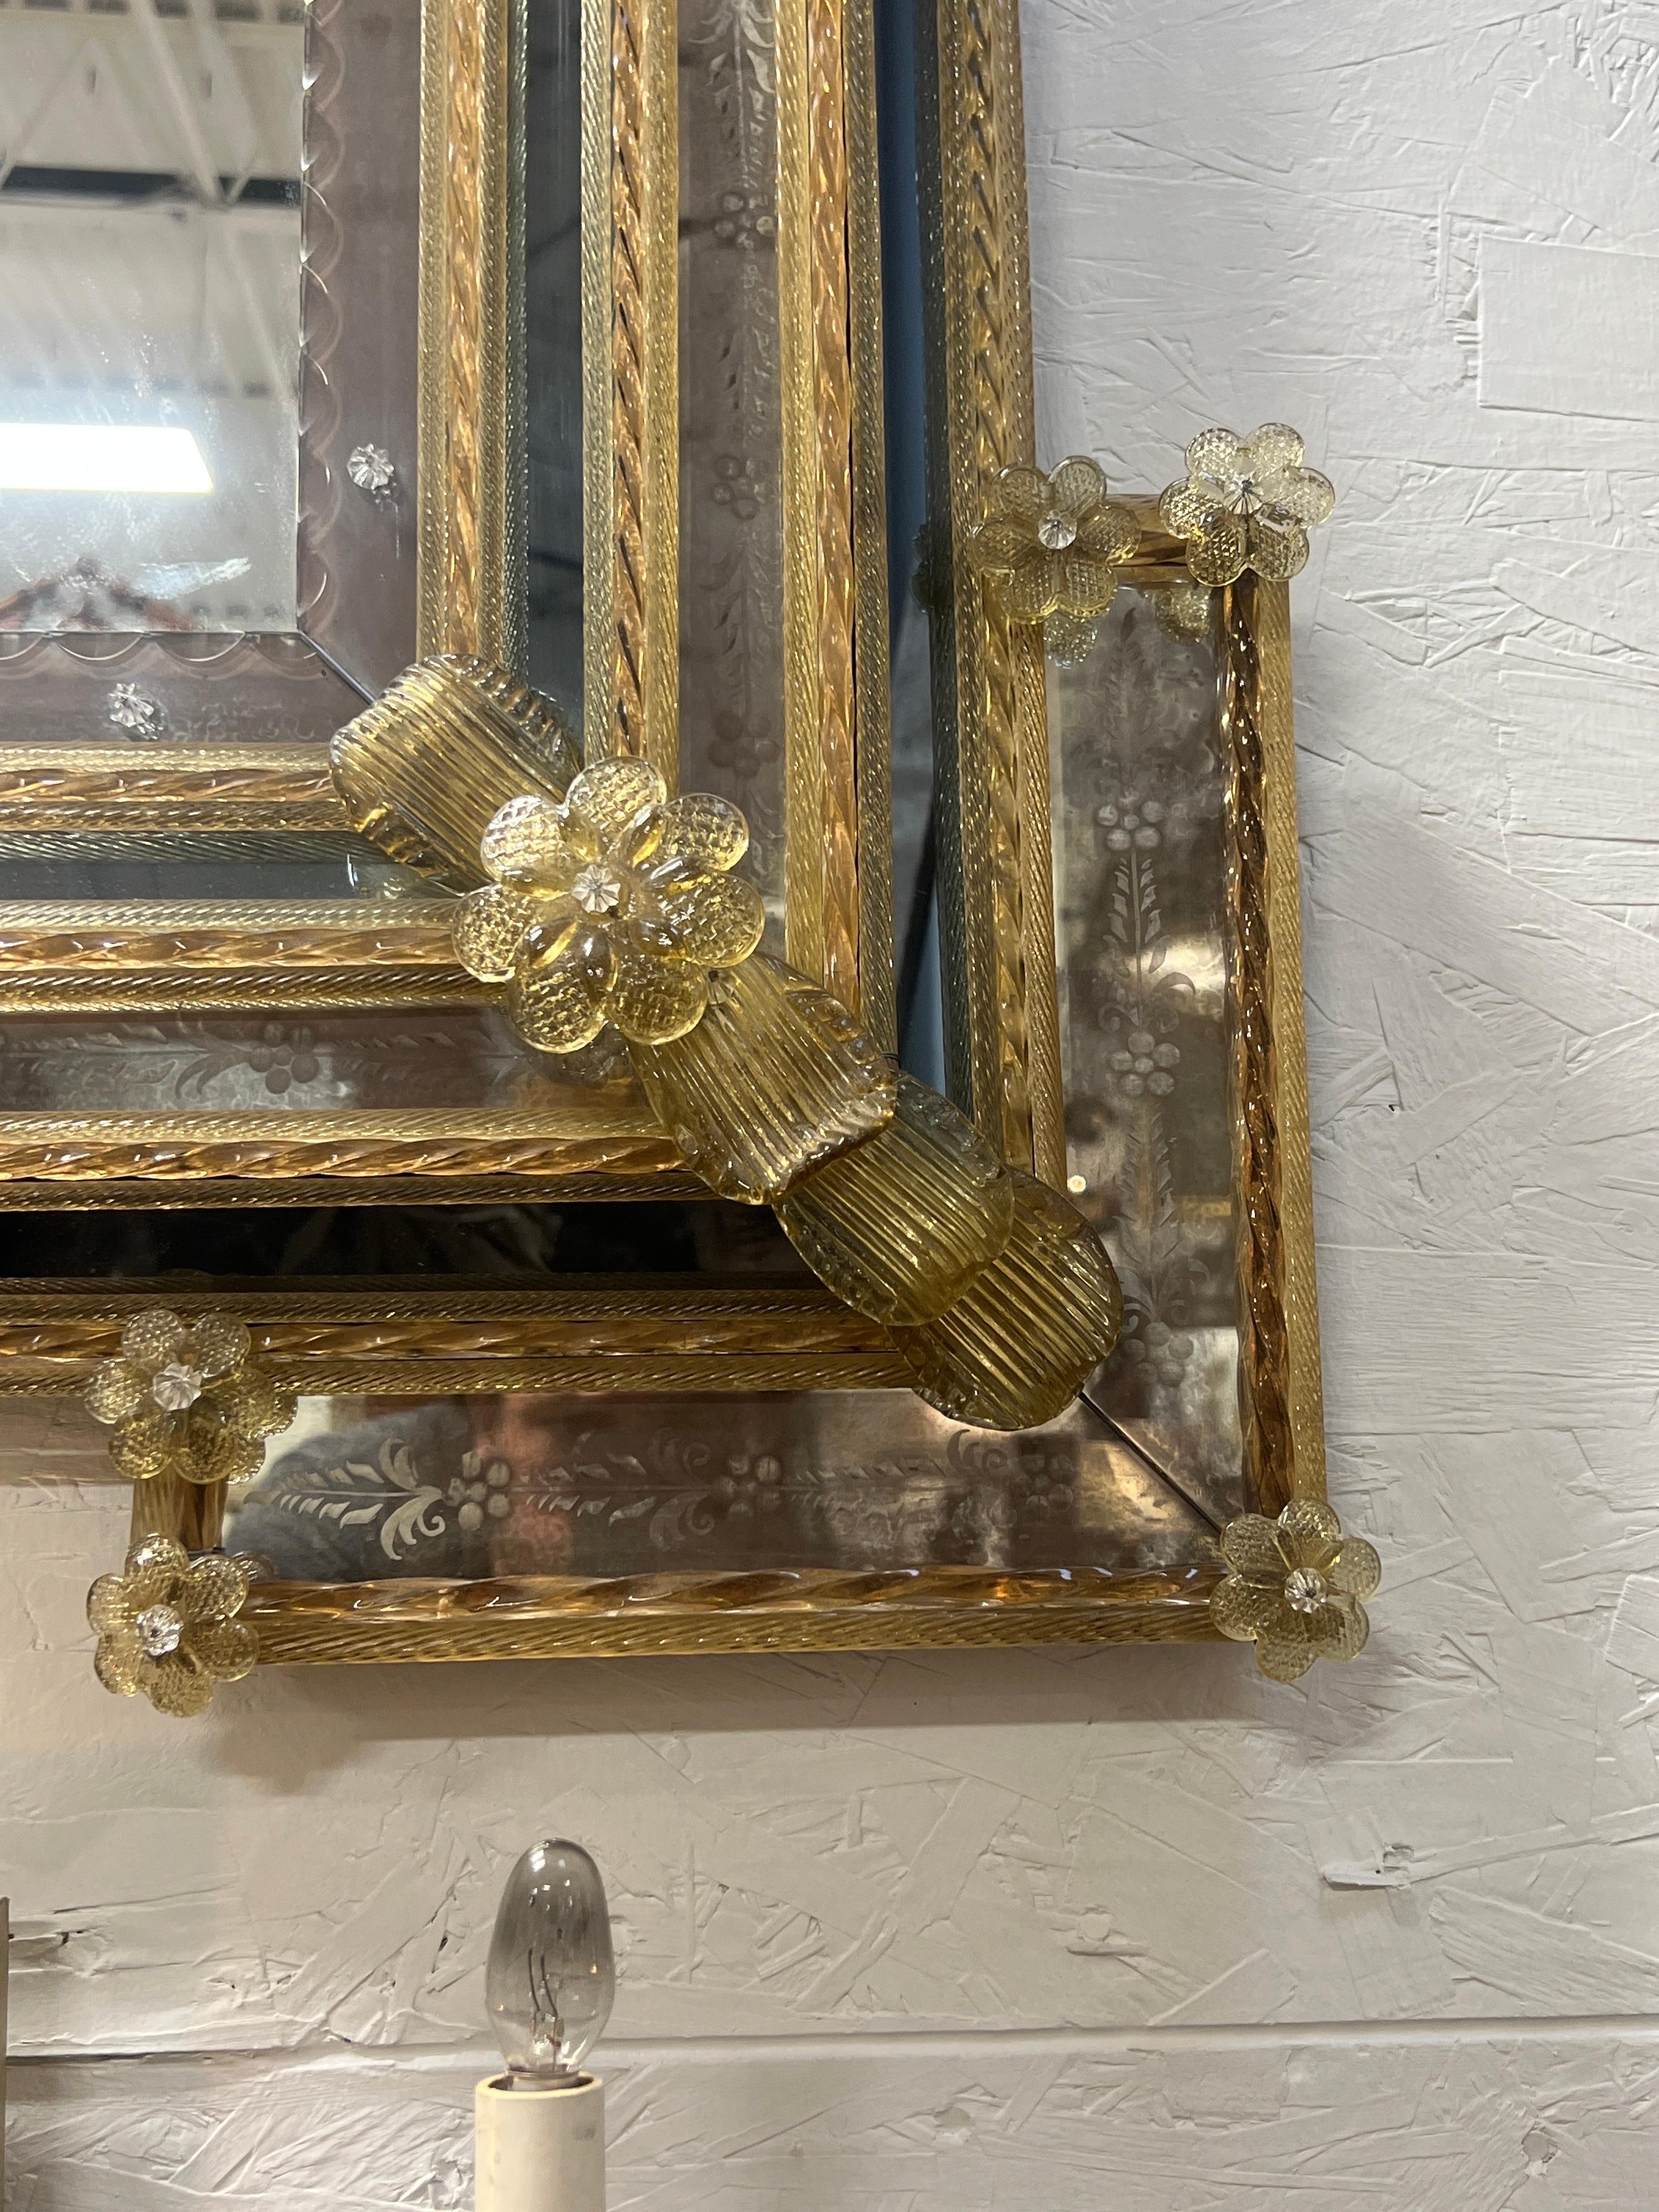 Venezianisch, um 1950.

Ein außergewöhnlich großer und hochwertiger venezianischer Spiegel aus der Mitte des Jahrhunderts mit rechteckiger Form, abgeschrägtem Glasrand, floralen Halterungen, geschwungenen Armen an der Oberseite und geätztem Glas auf